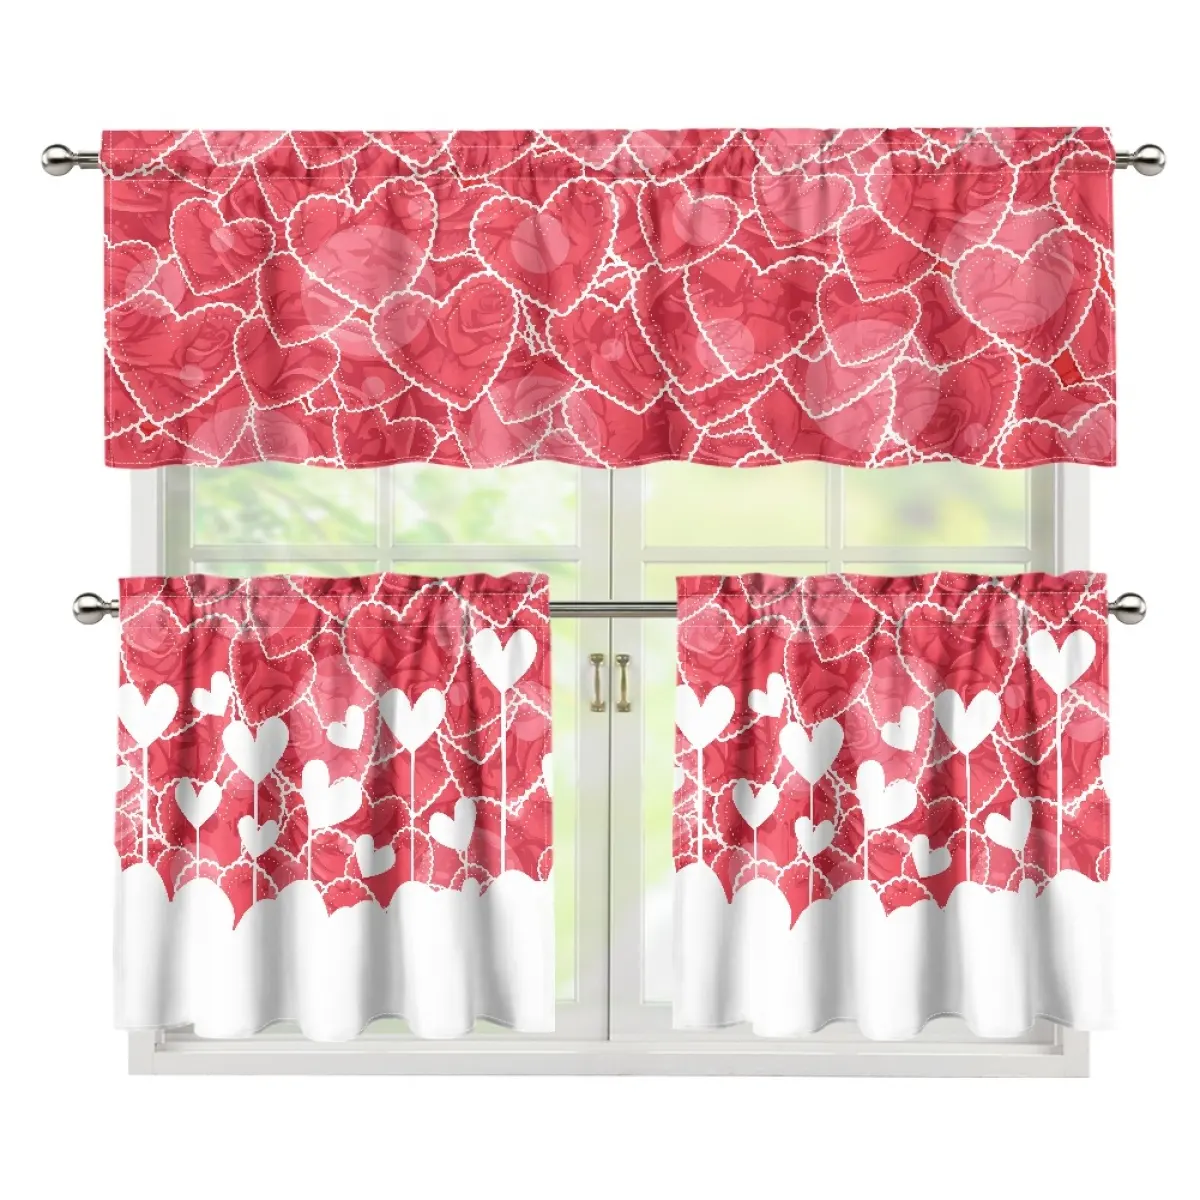 カスタムピンクのバレンタインのヨーロピアンスタイルのカーテンとバランスセットプリントオンデマンドカーテンセットはお祝いの雰囲気を追加します